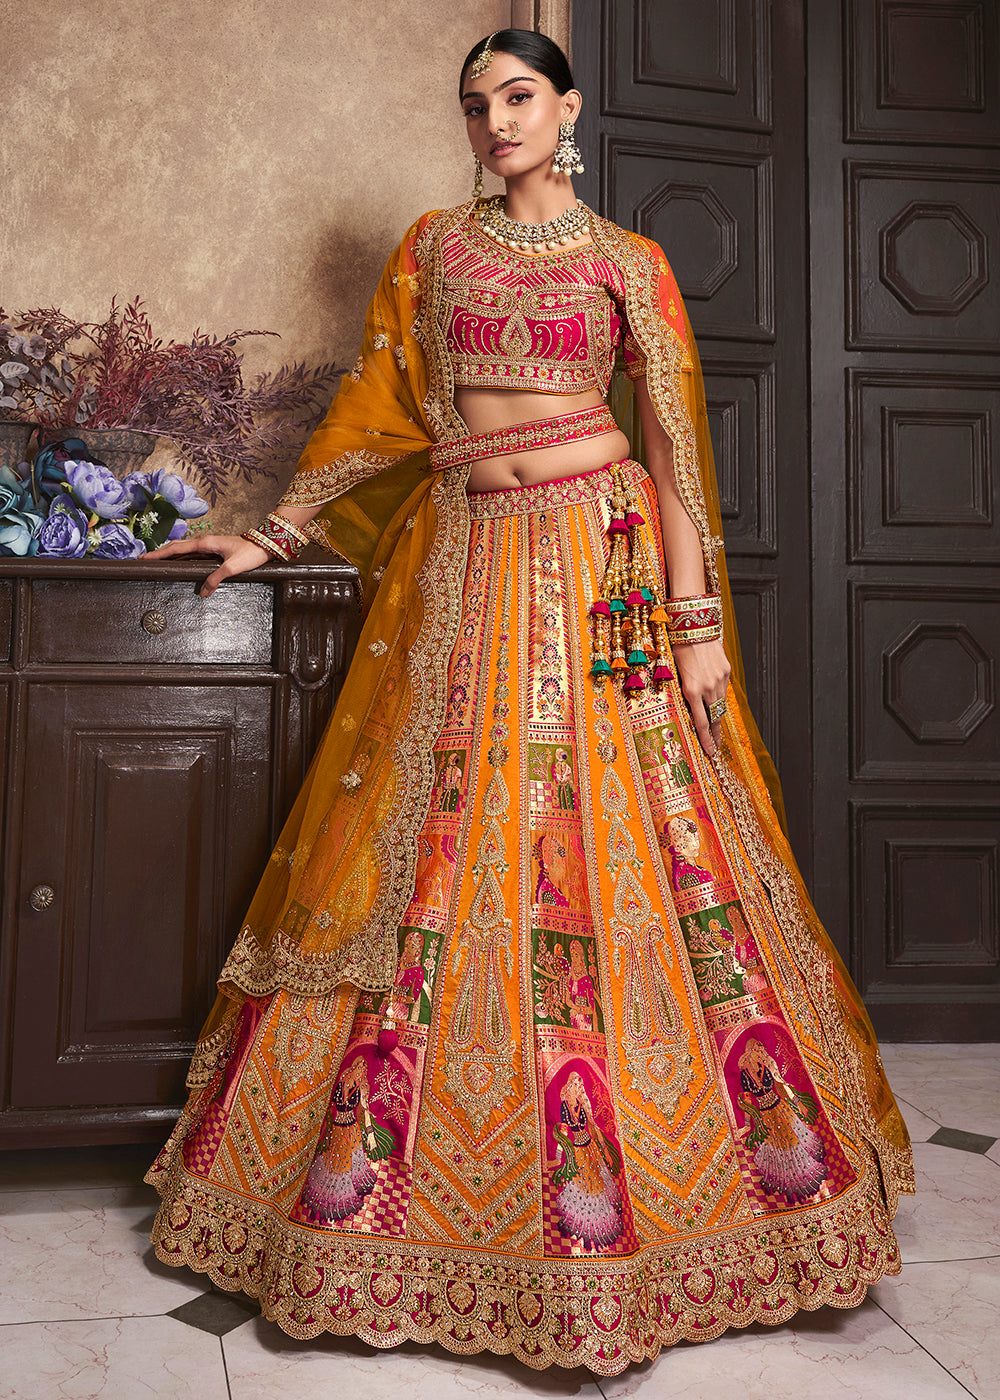 Buy Now Mustard Orange Banarasi Silk Bridal Designer Lehenga Choli Online in USA, UK, Canada & Worldwide at Empress Clothing.